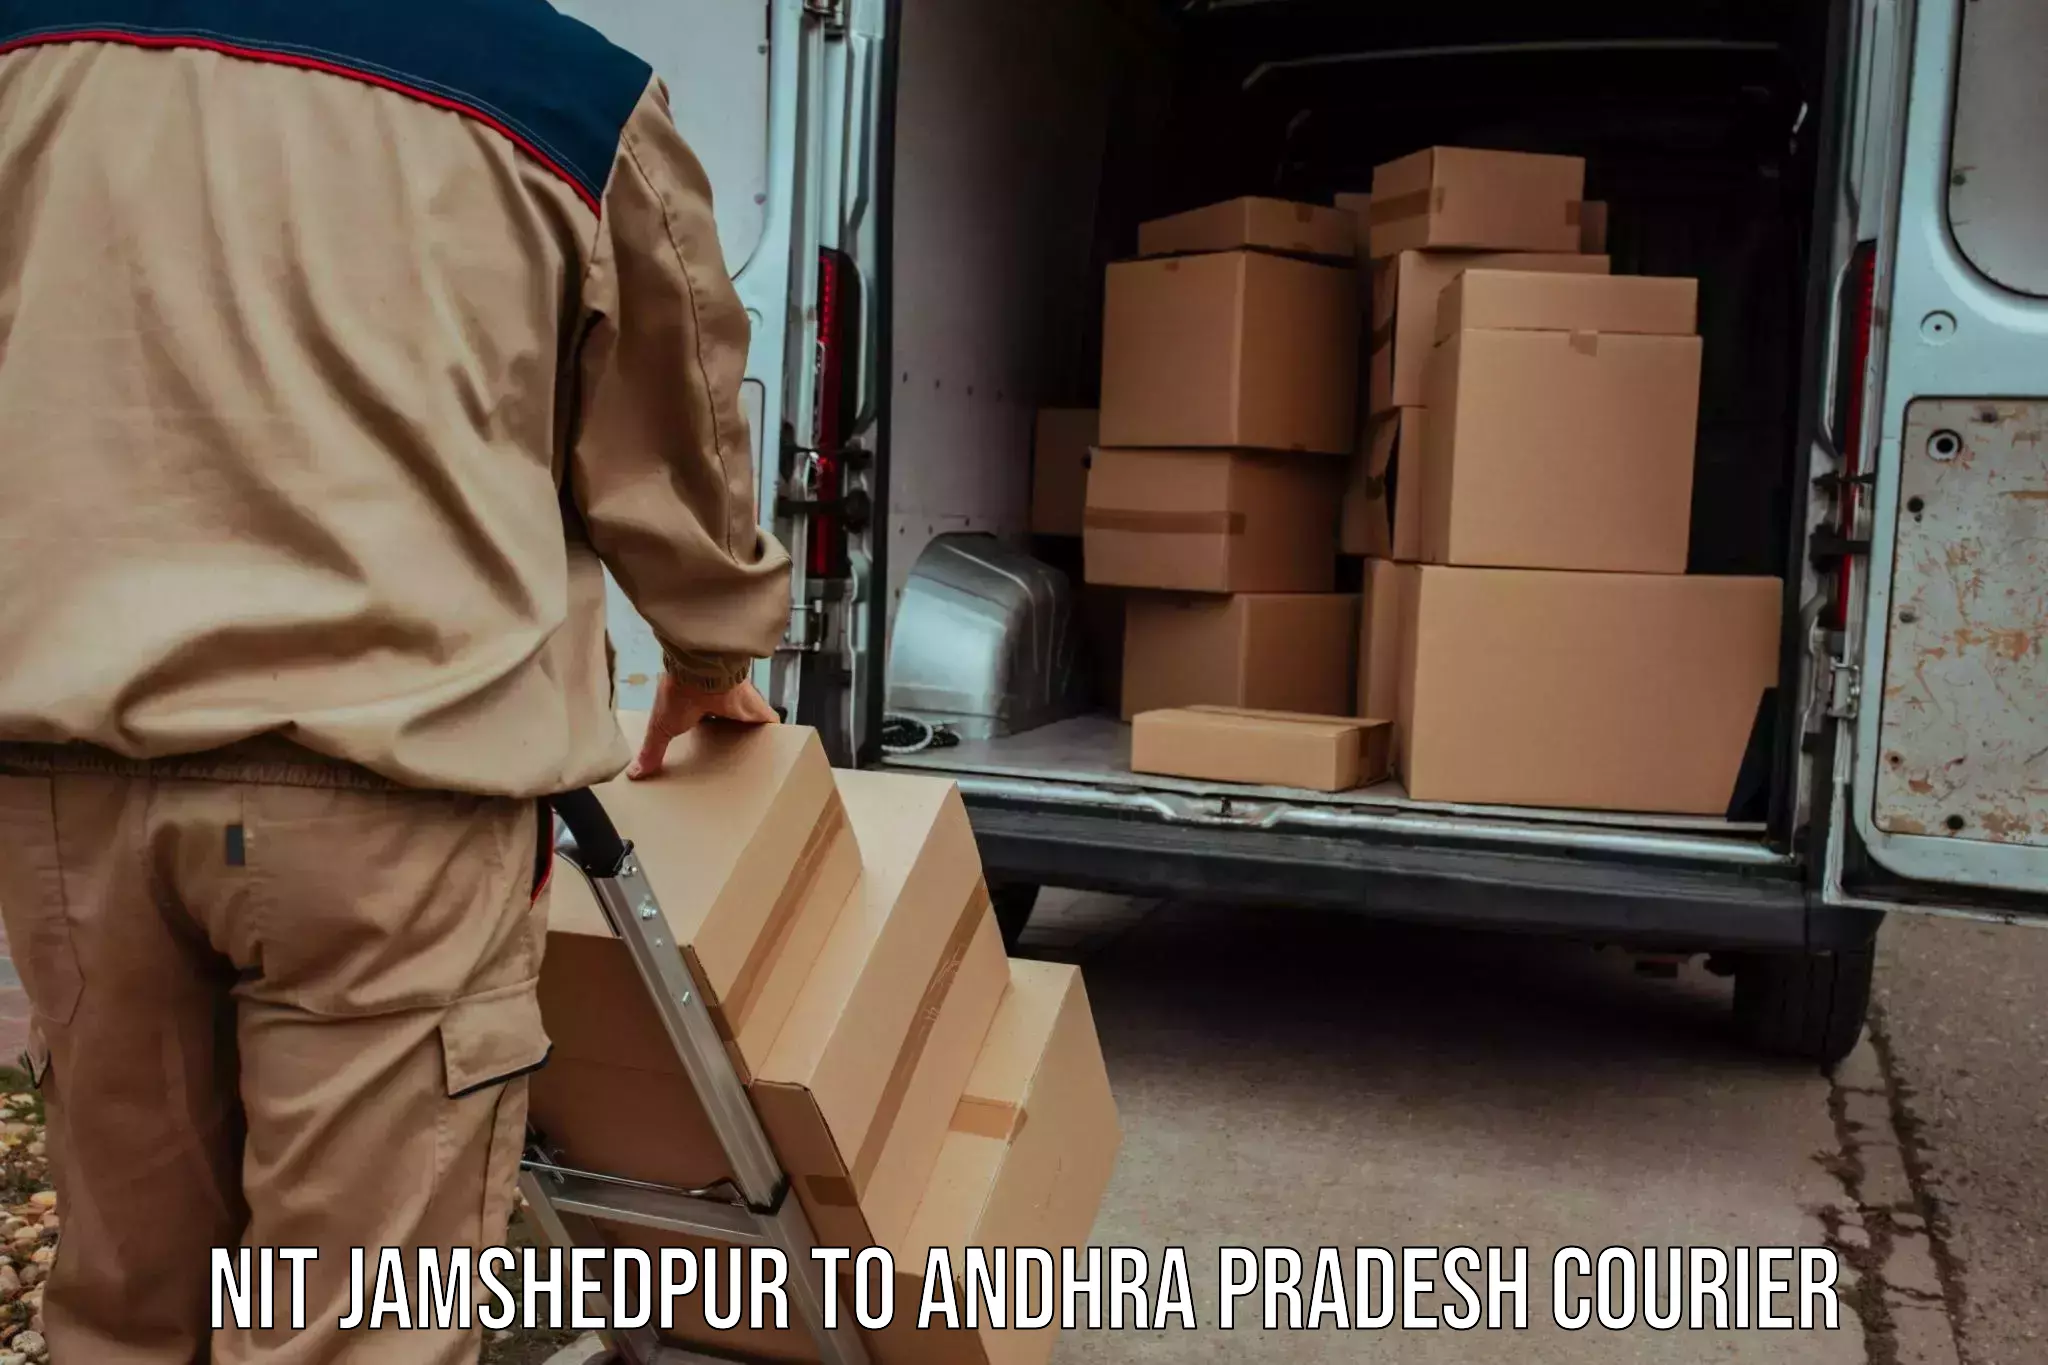 Efficient parcel service NIT Jamshedpur to Andhra Pradesh